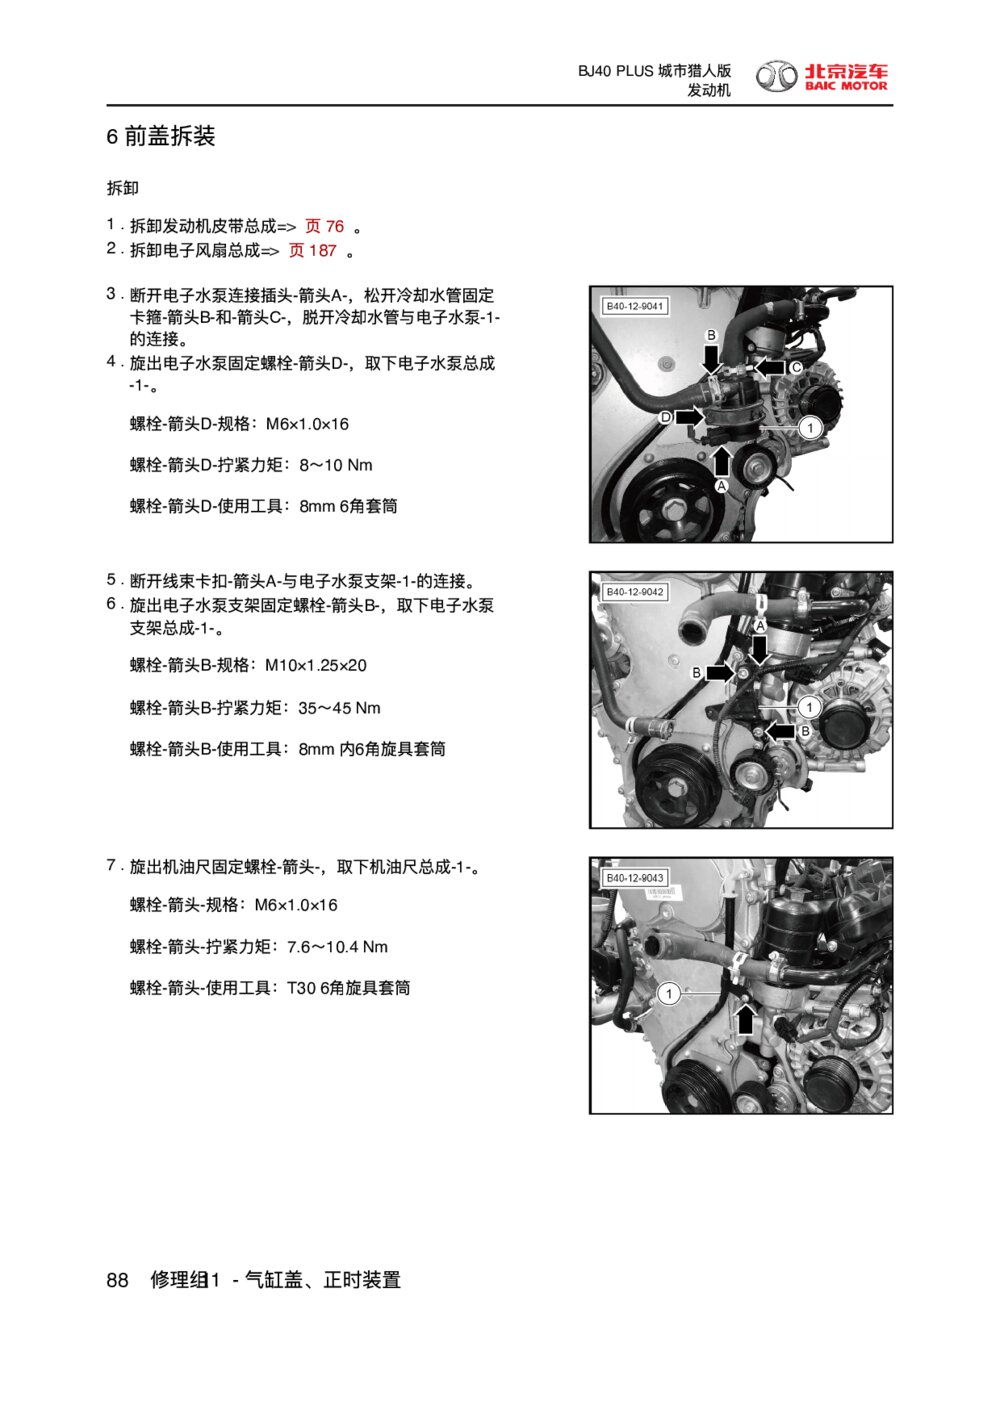 2018款北京BJ40 PLUS发动机前盖拆装1